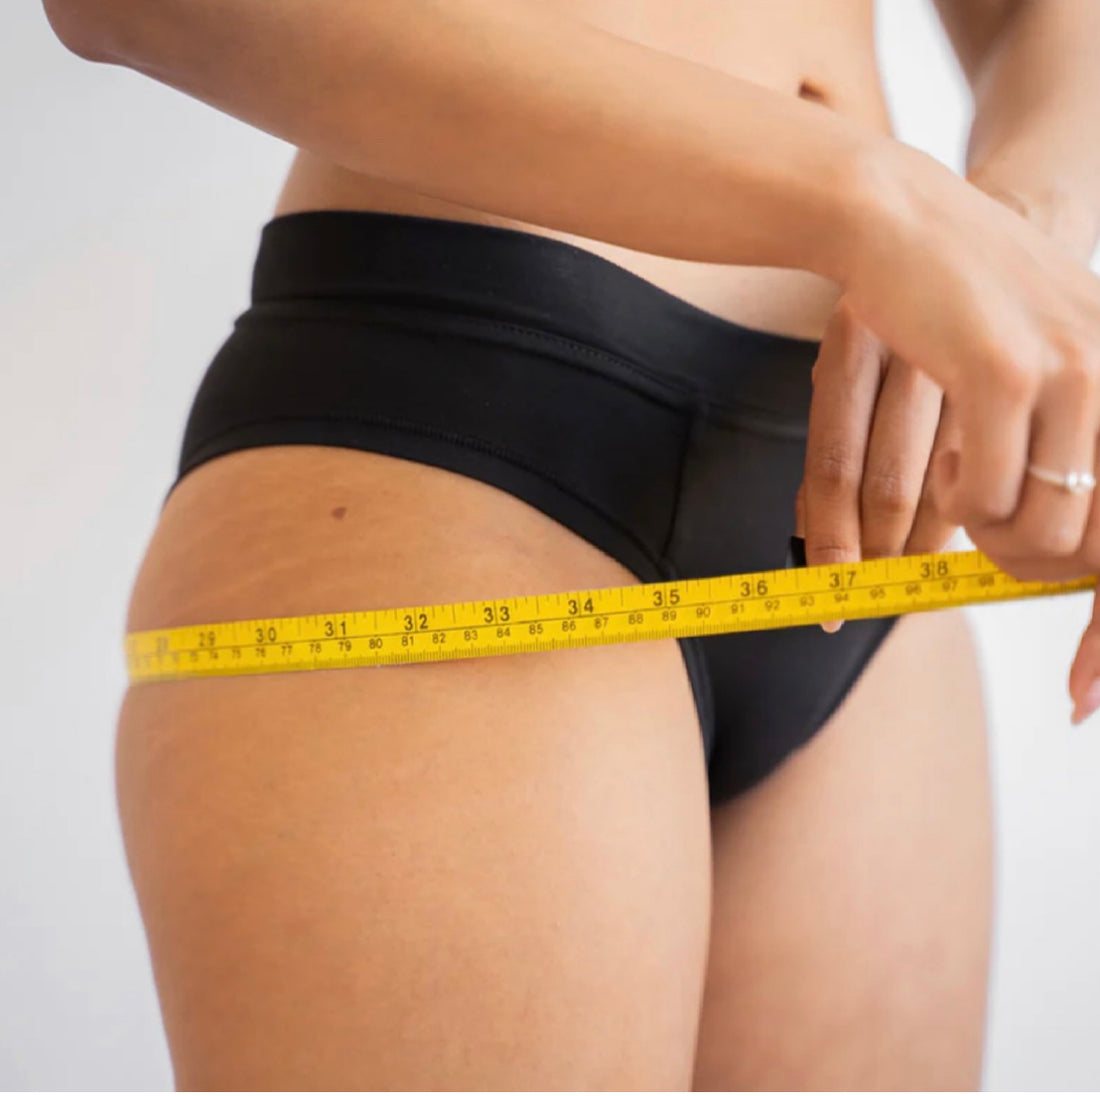 Drainage du corps, rétention d’eau : comment enlever la cellulite et perdre du poids durablement ?